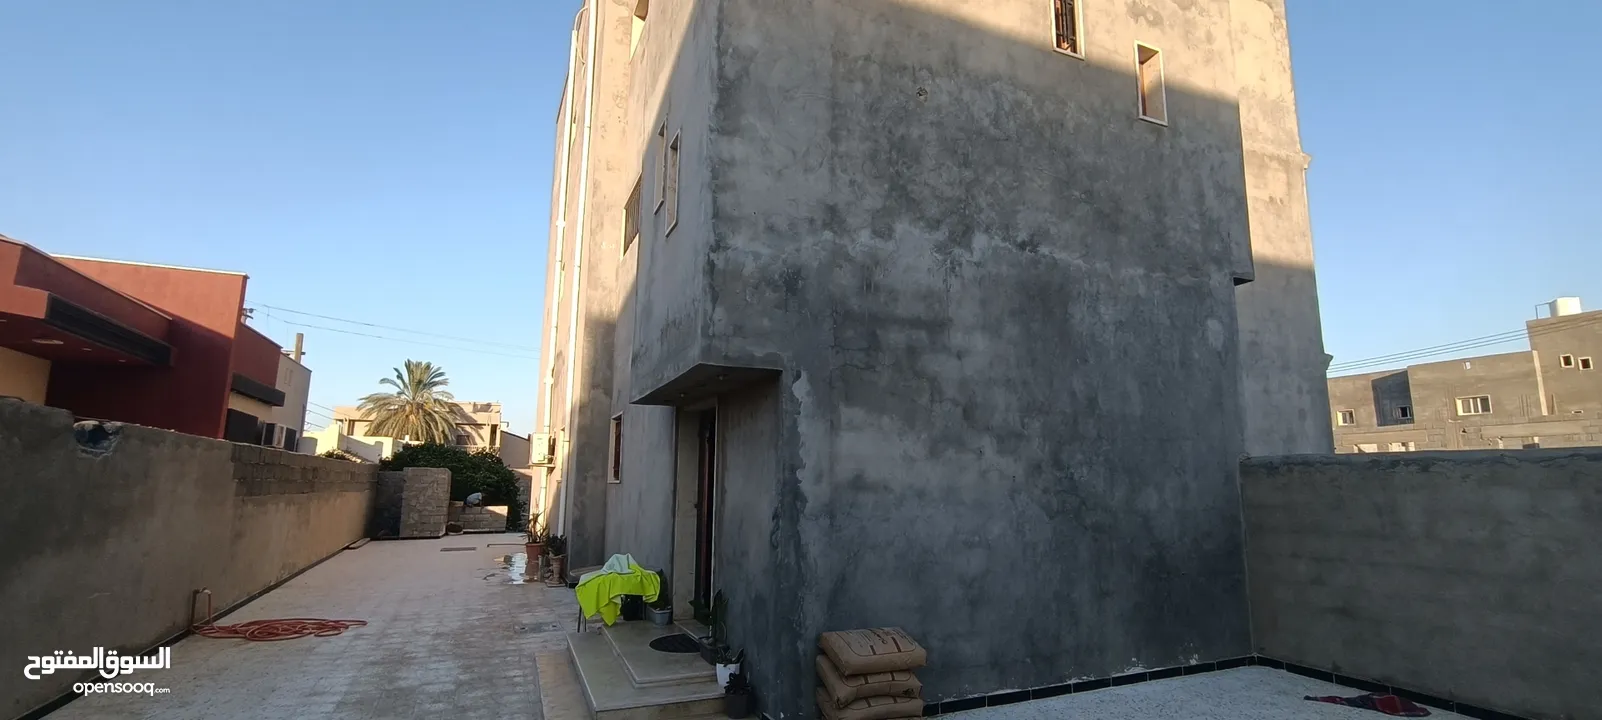 منزل تلاتة ادوار للبيع في قصر بن غشير